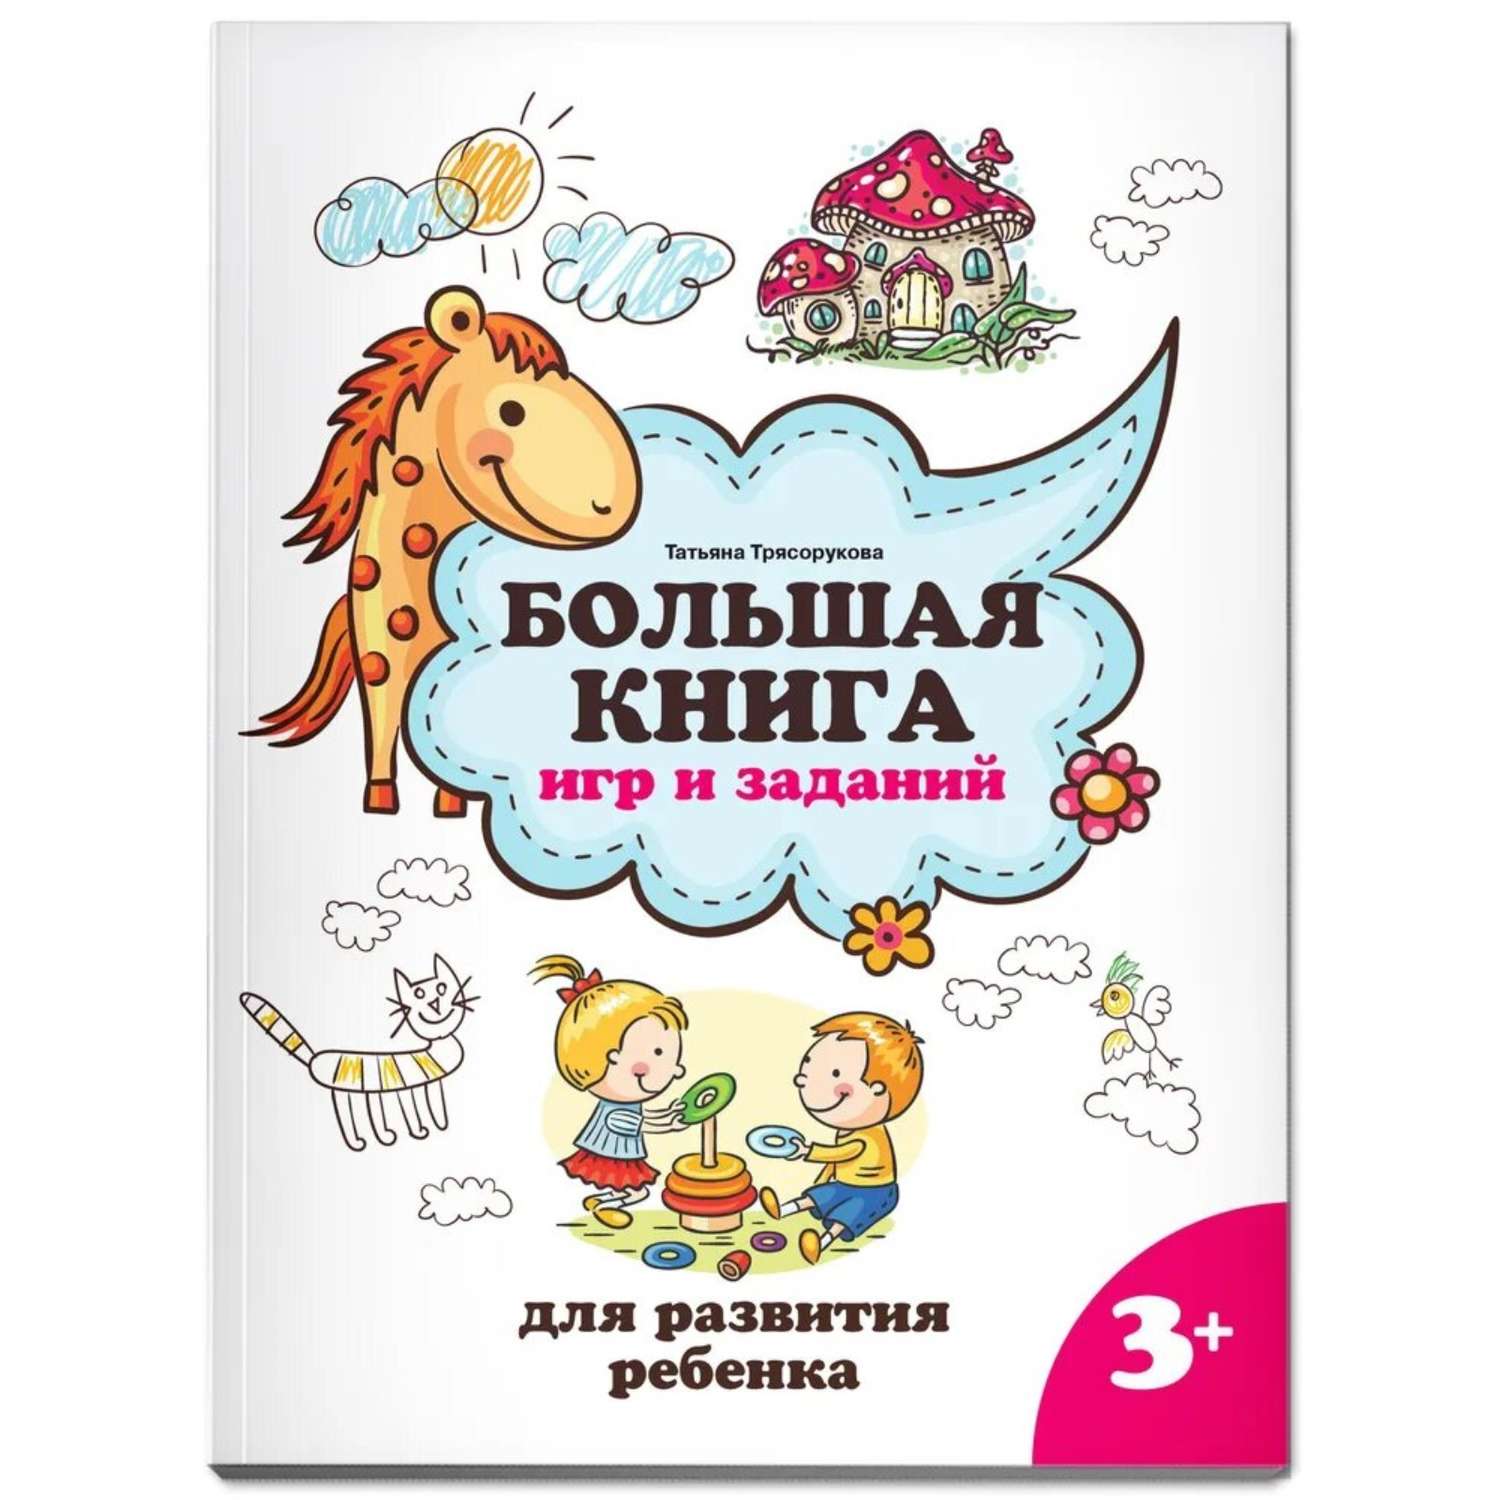 Большая книга АСТ игр и заданий для развития ребенка 3+ - фото 1